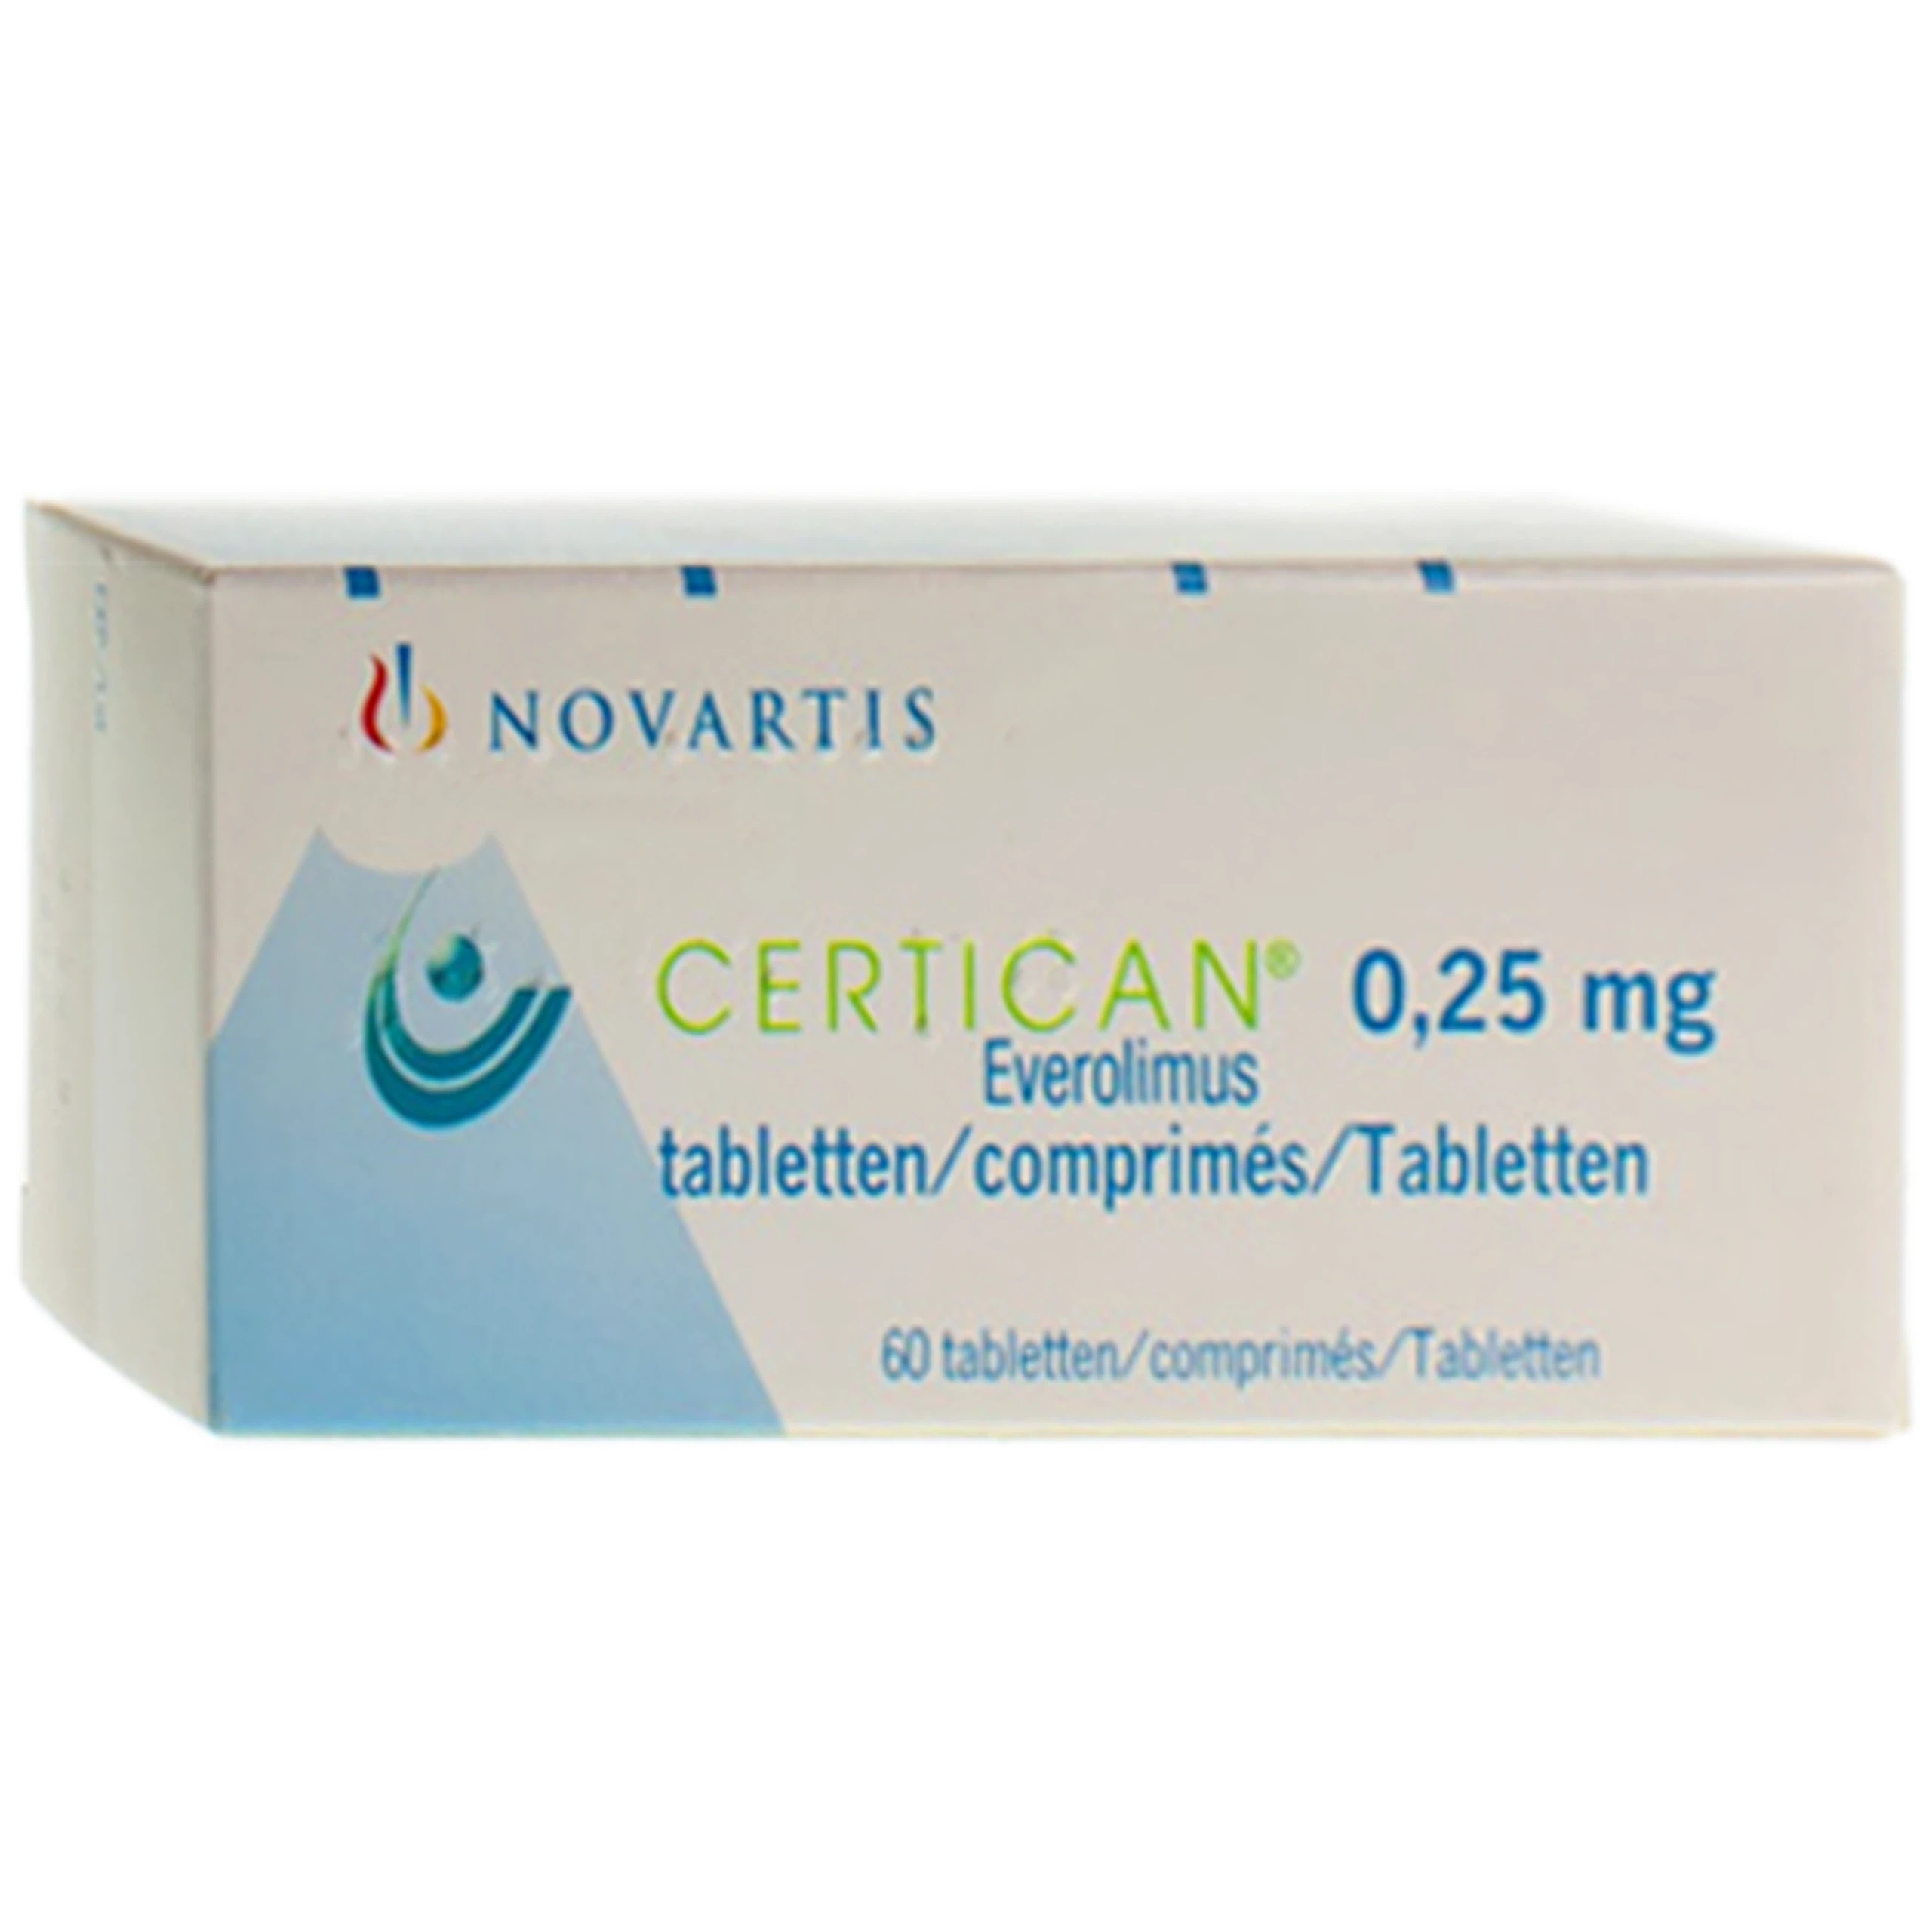 Thuốc Certican 0.25mg Novartis dự phòng thải tạng ghép ở bệnh nhân ghép thận hoặc tim (6 vỉ x 10 viên)